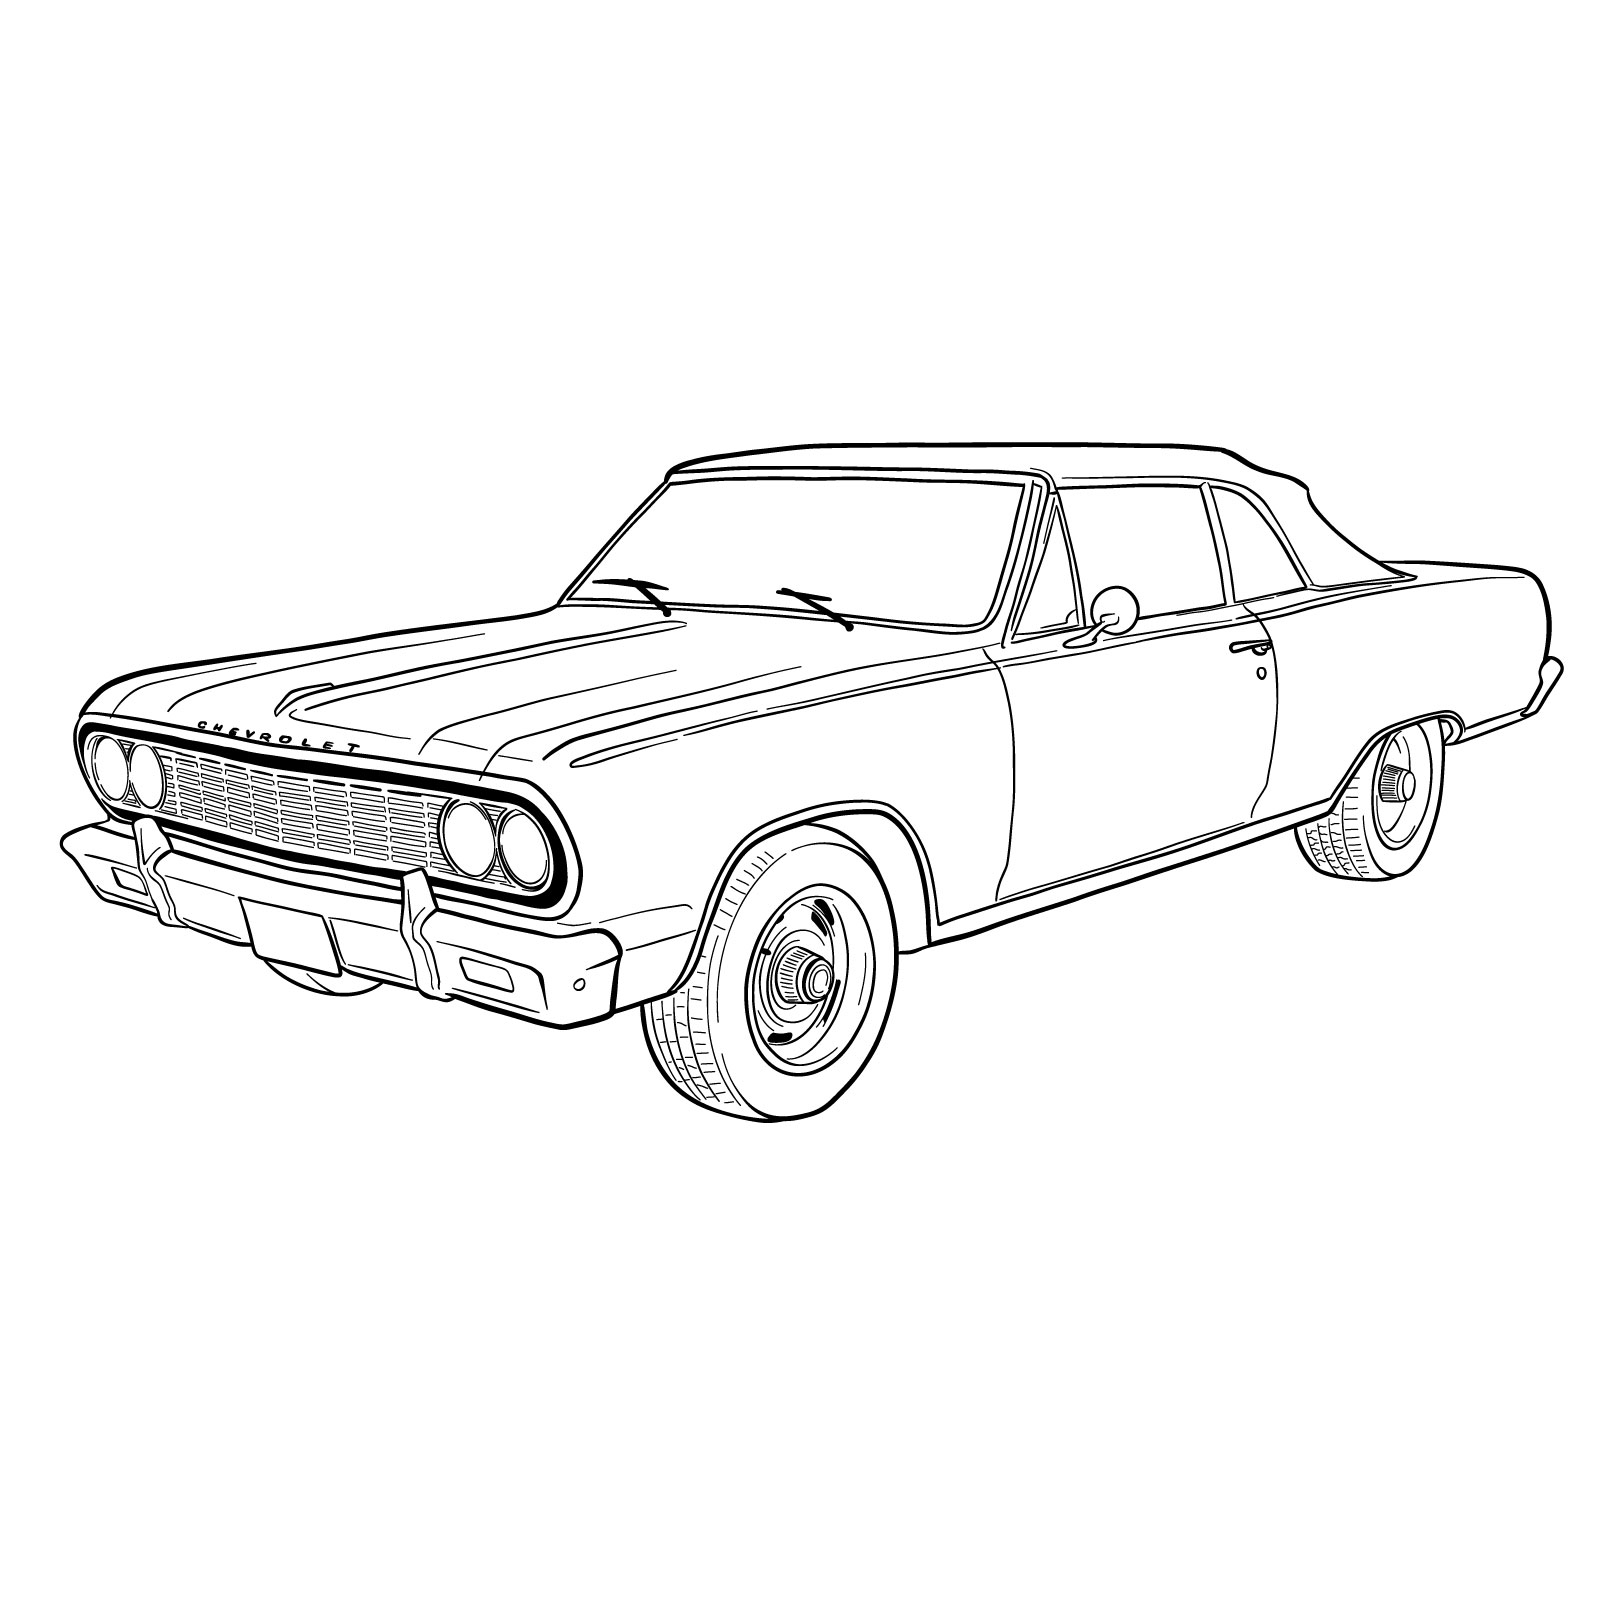 How to draw 1964 Chevrolet Malibu - final step